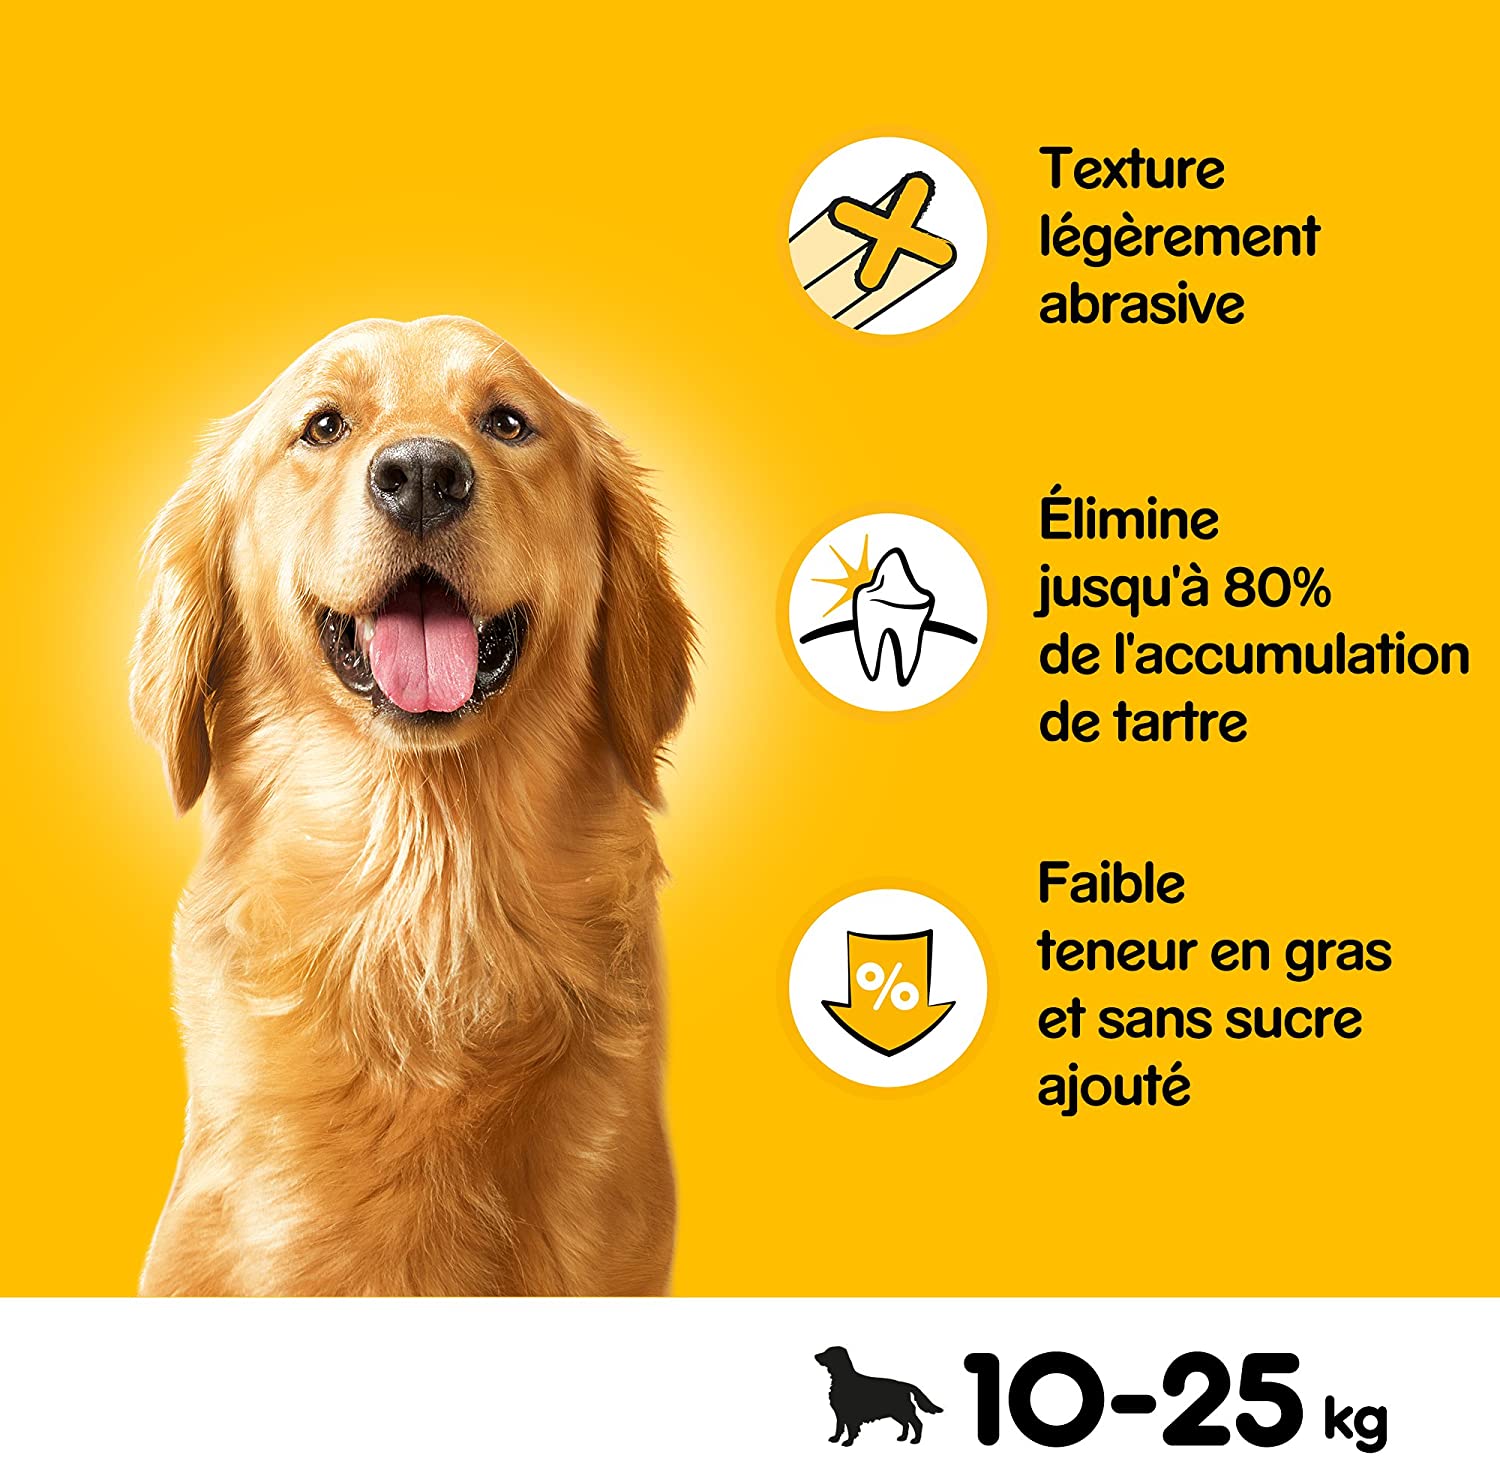  Pedigree - Barritas DentaSix para perros, 4x4x(7pc/270gr)= 4,32 kg .112 ud diaria para higiene oral 